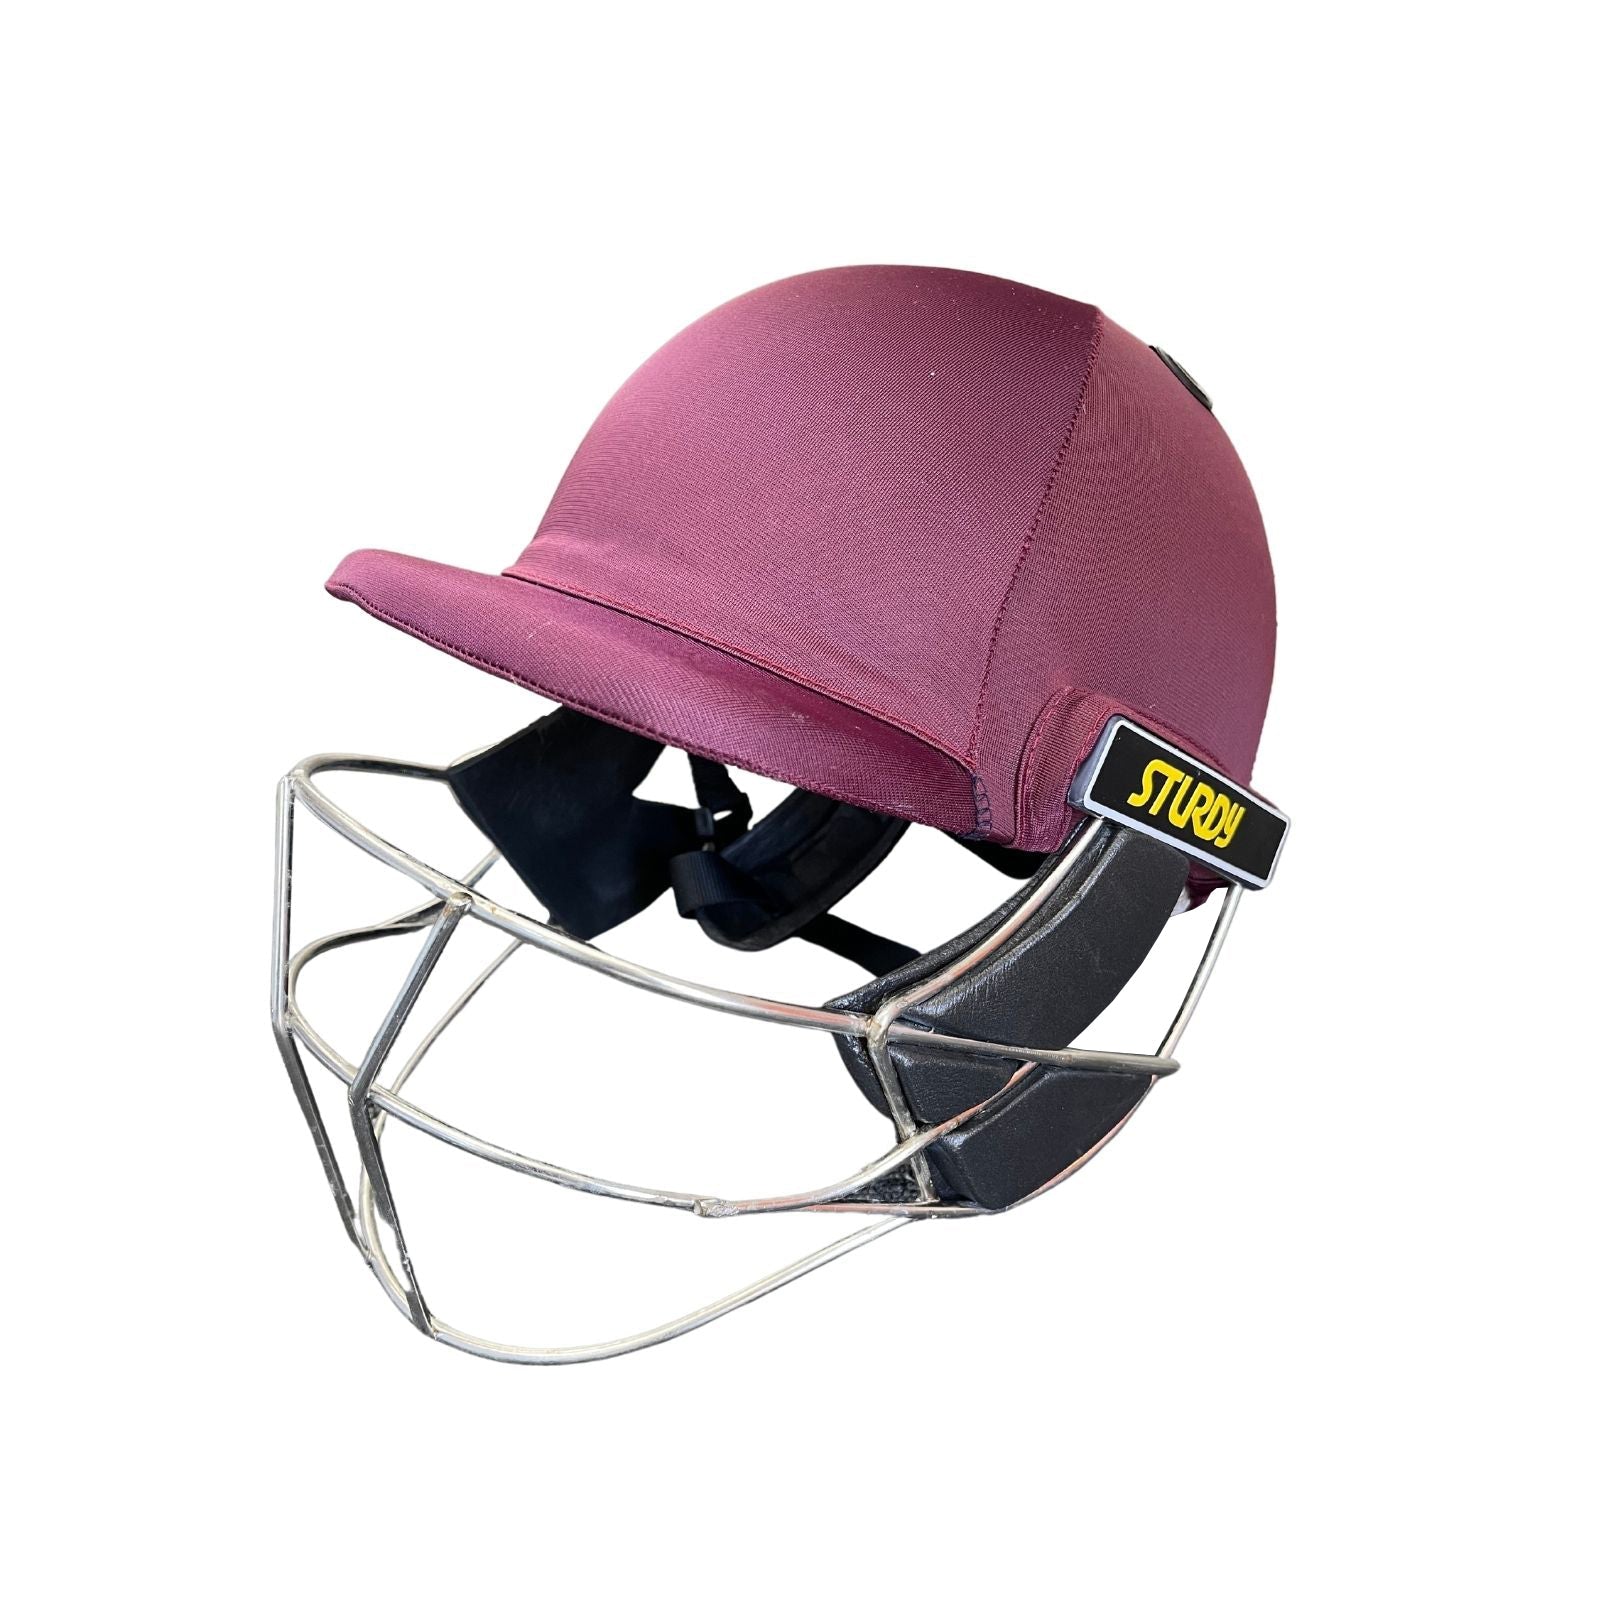 Sturdy Cheetah Maroon Steel Cricket Helmet - Senior